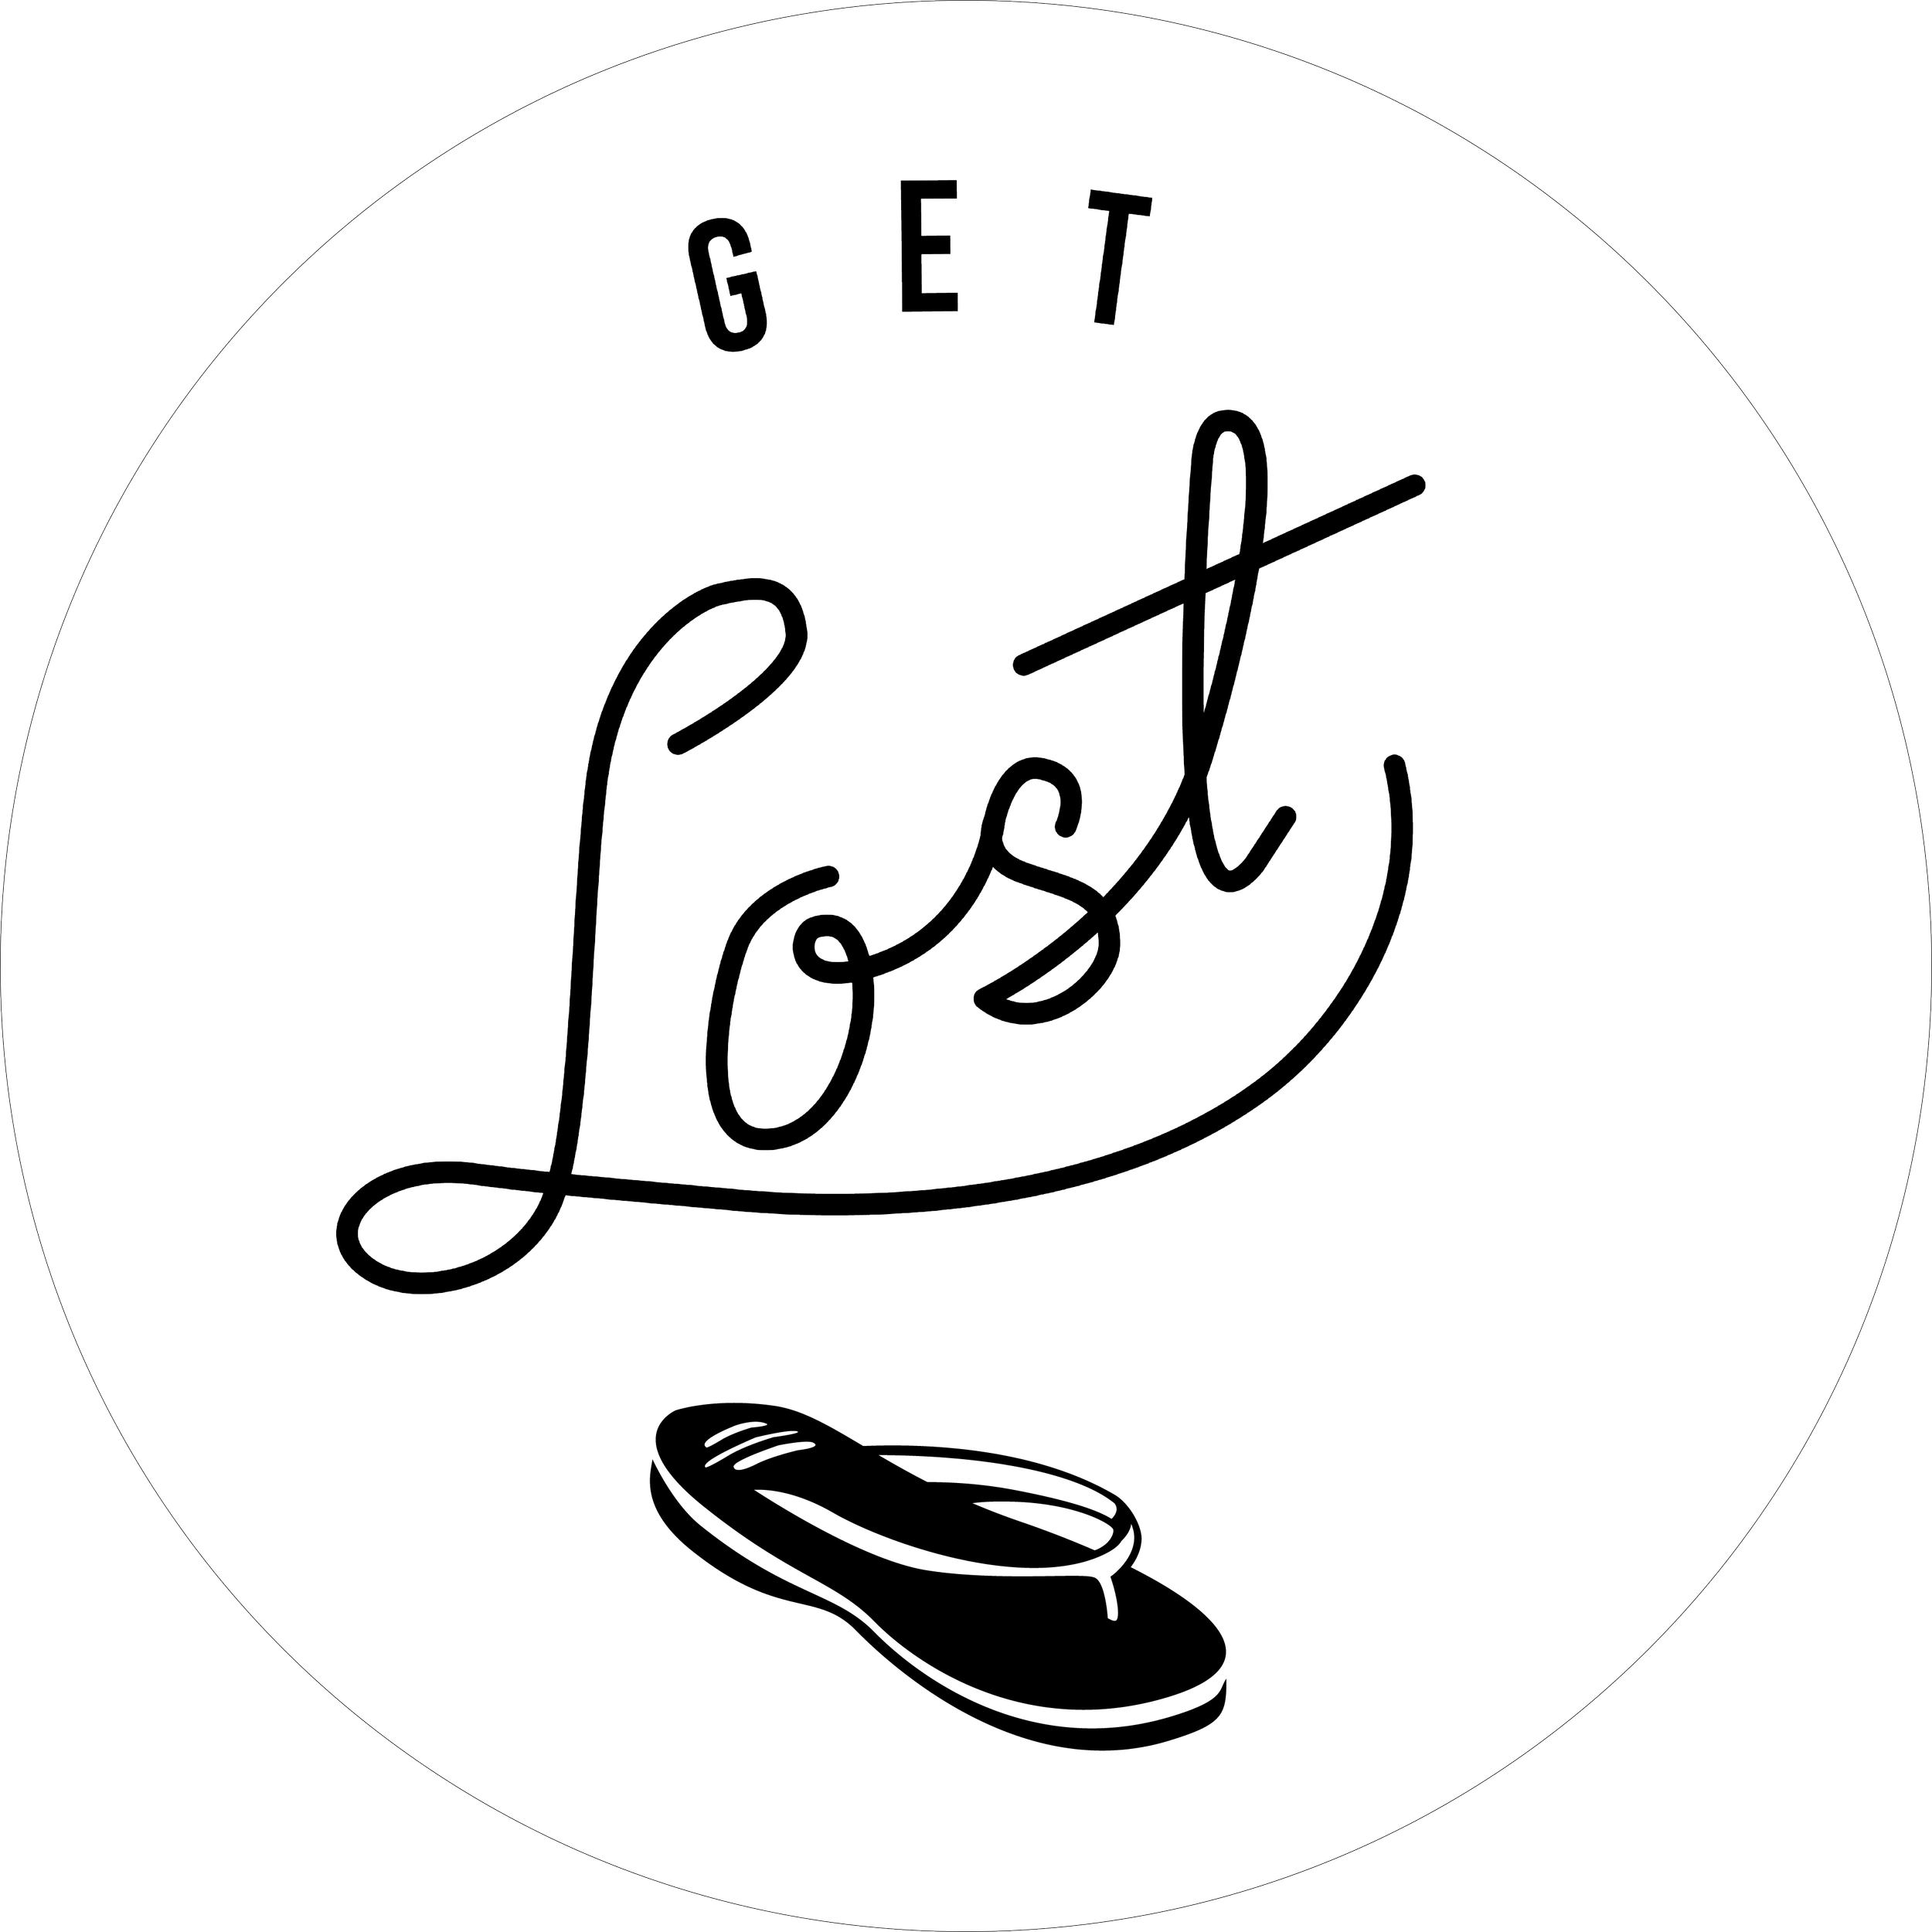 Get Lost